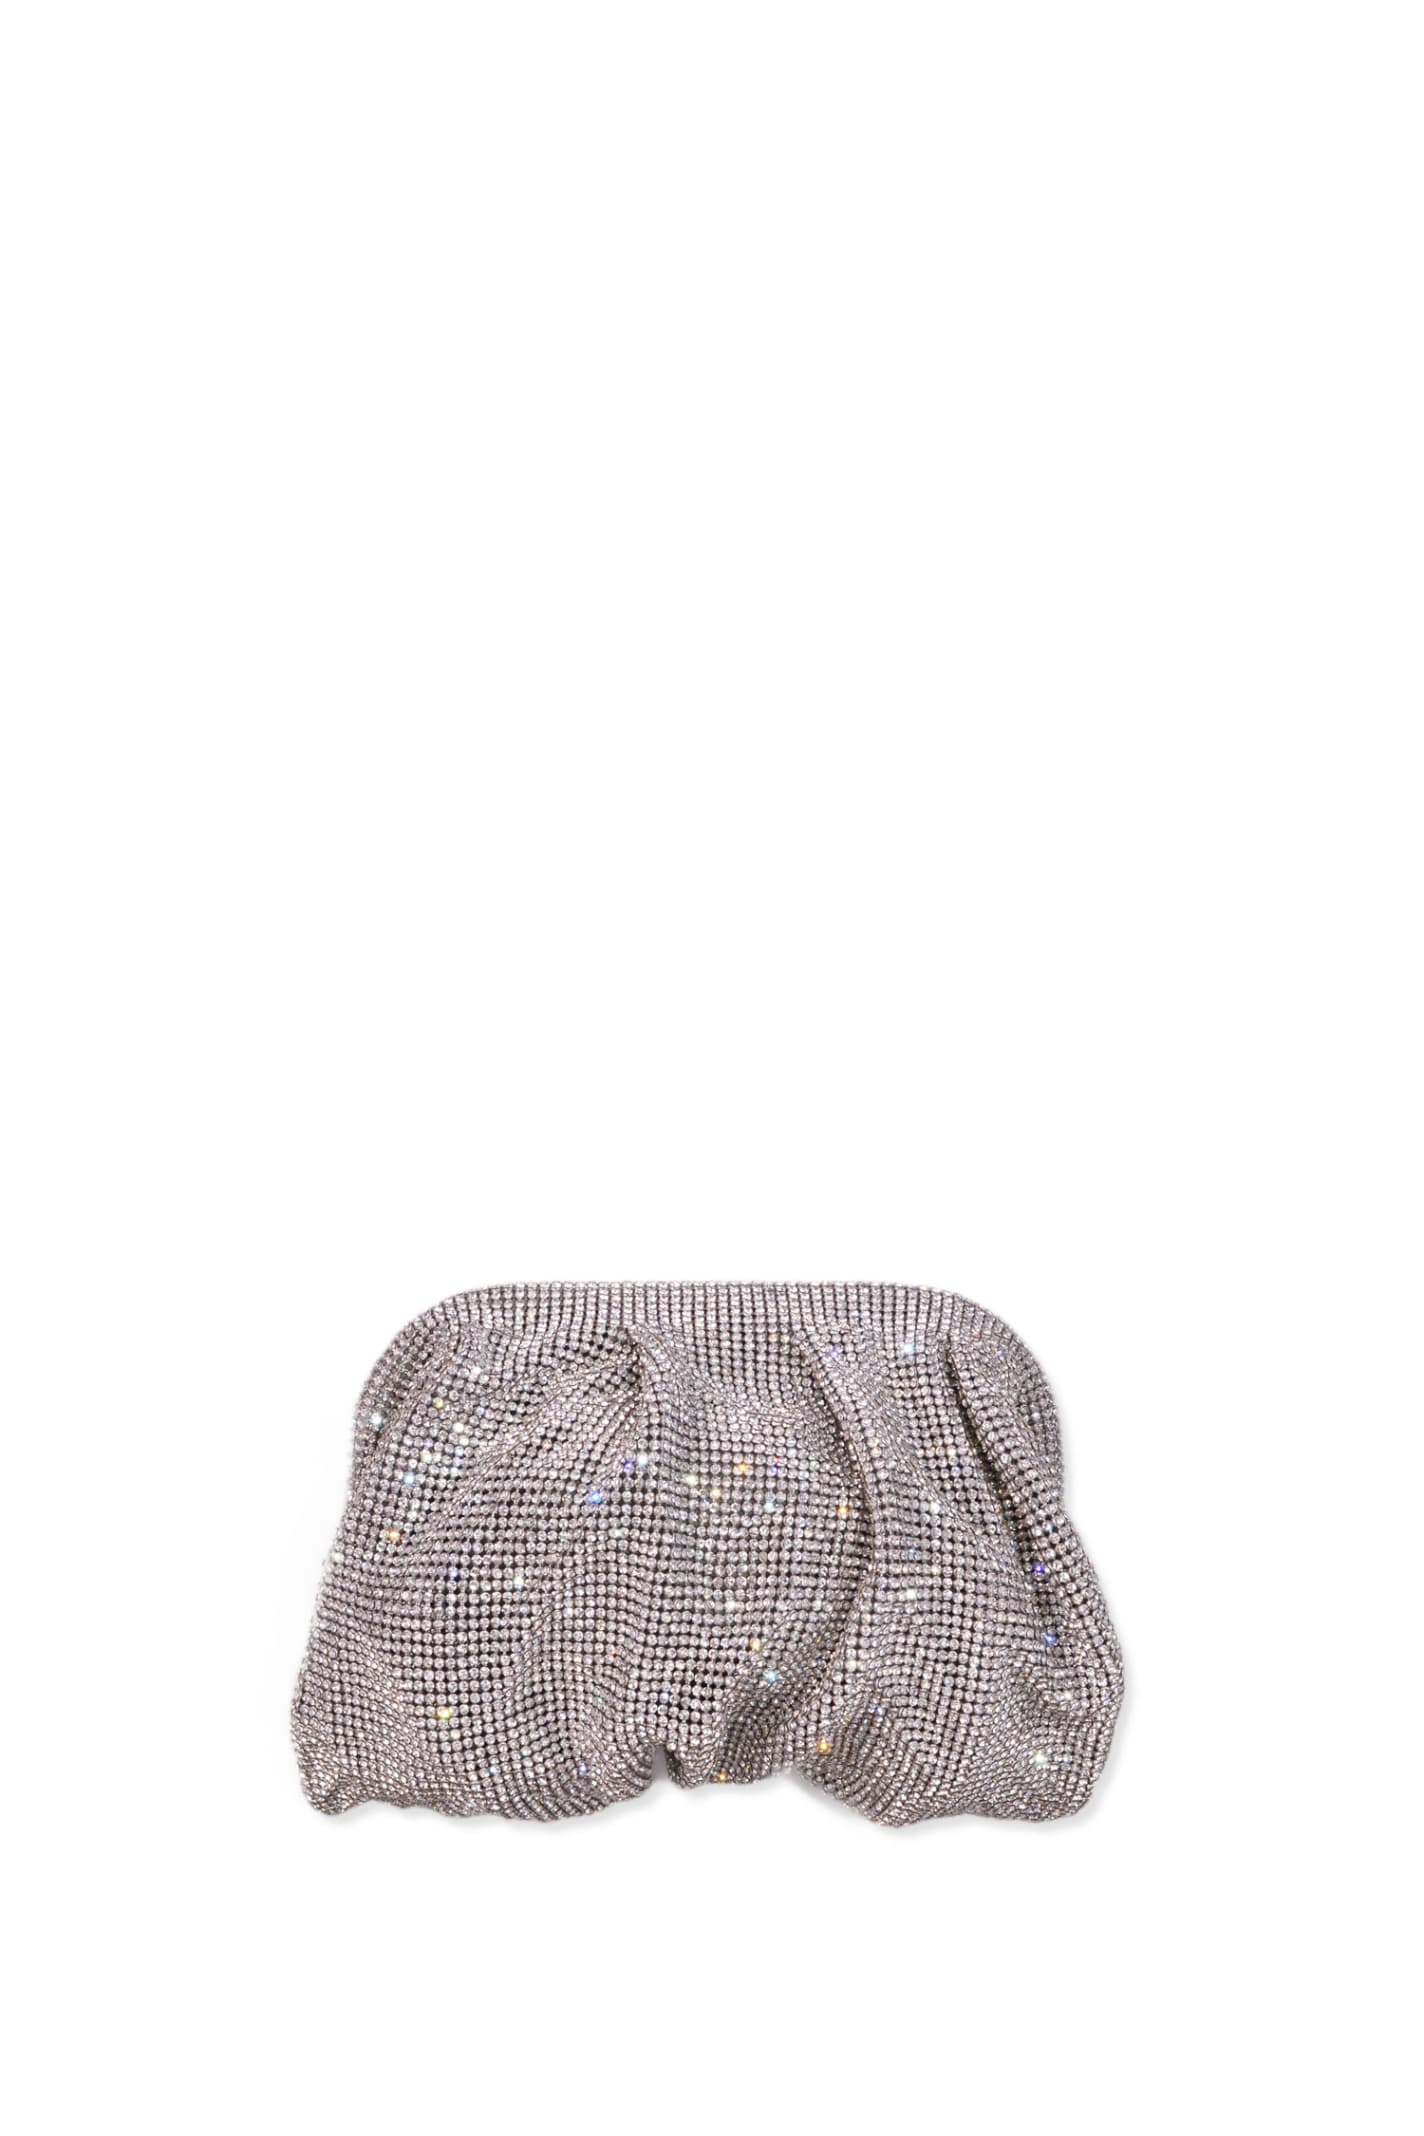 Benedetta Bruzziches Handbag In Silver